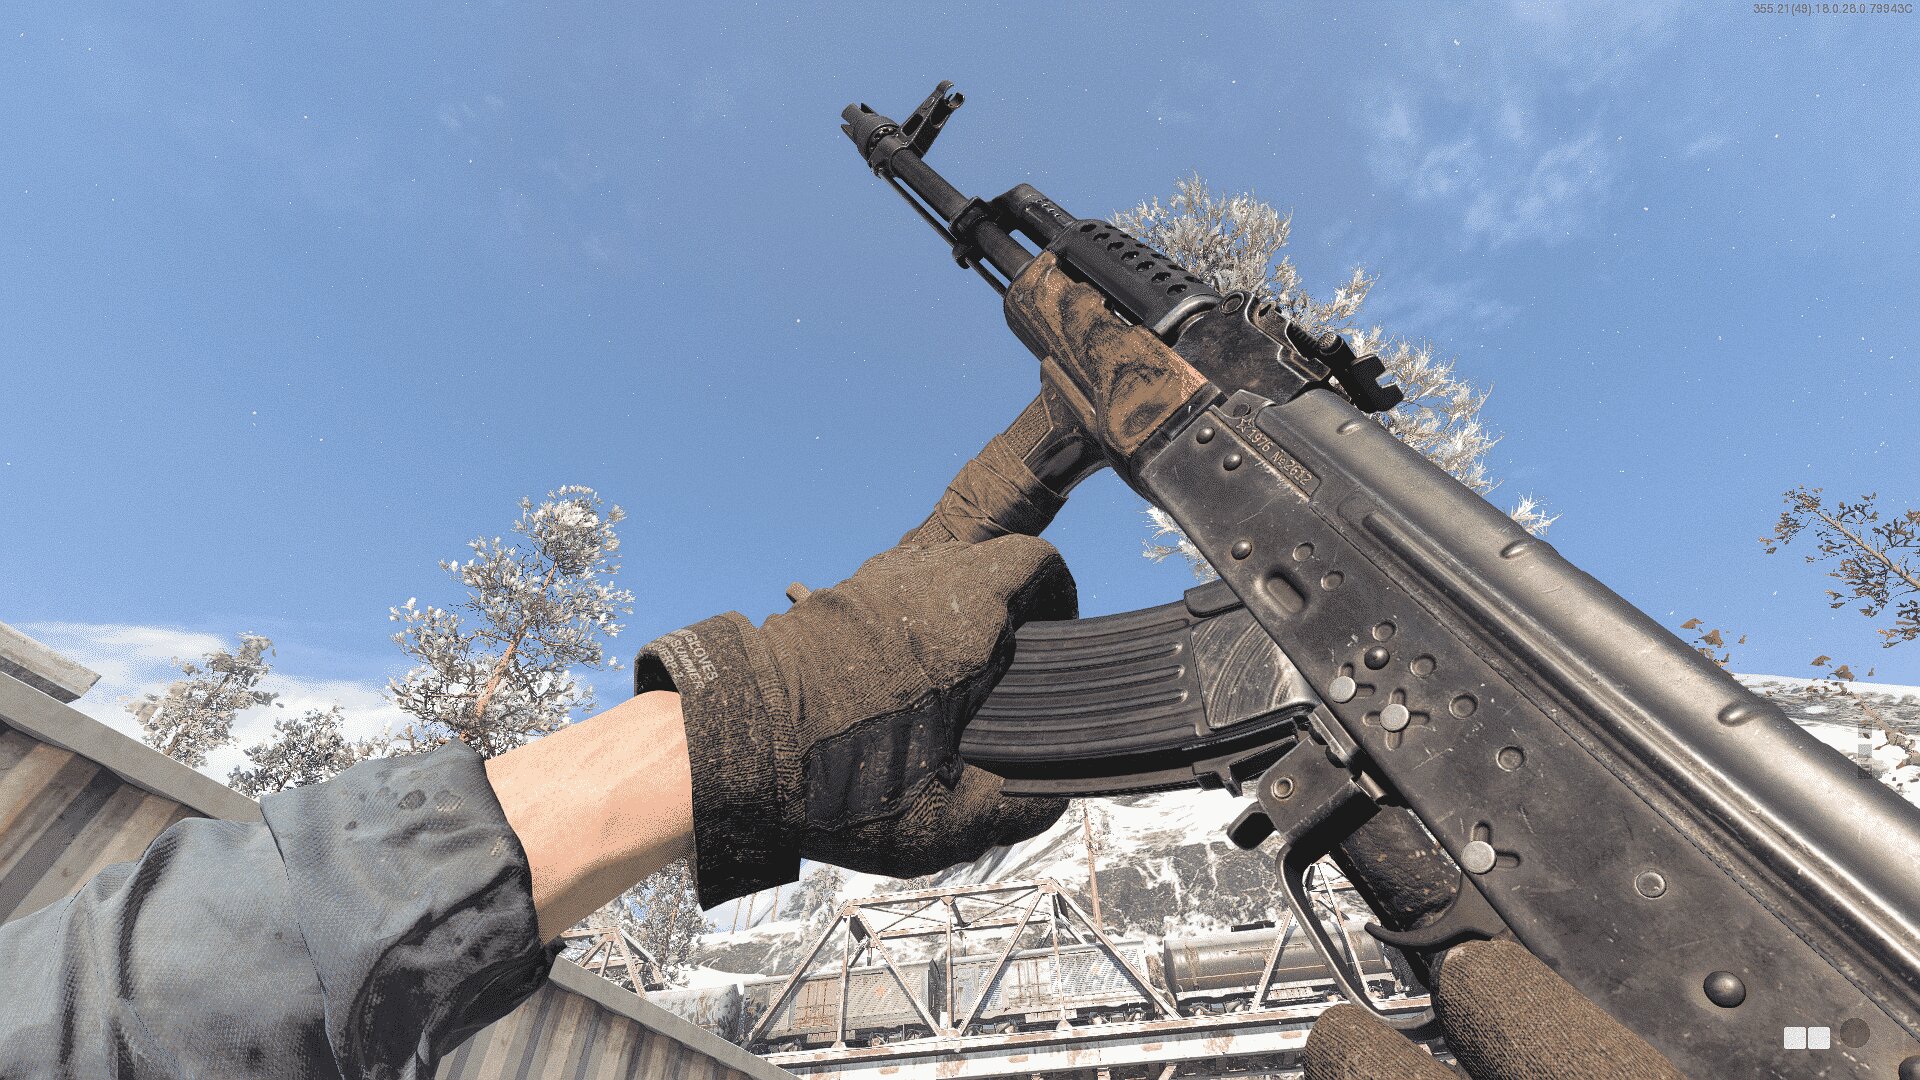 AK-47 Cold Warzone